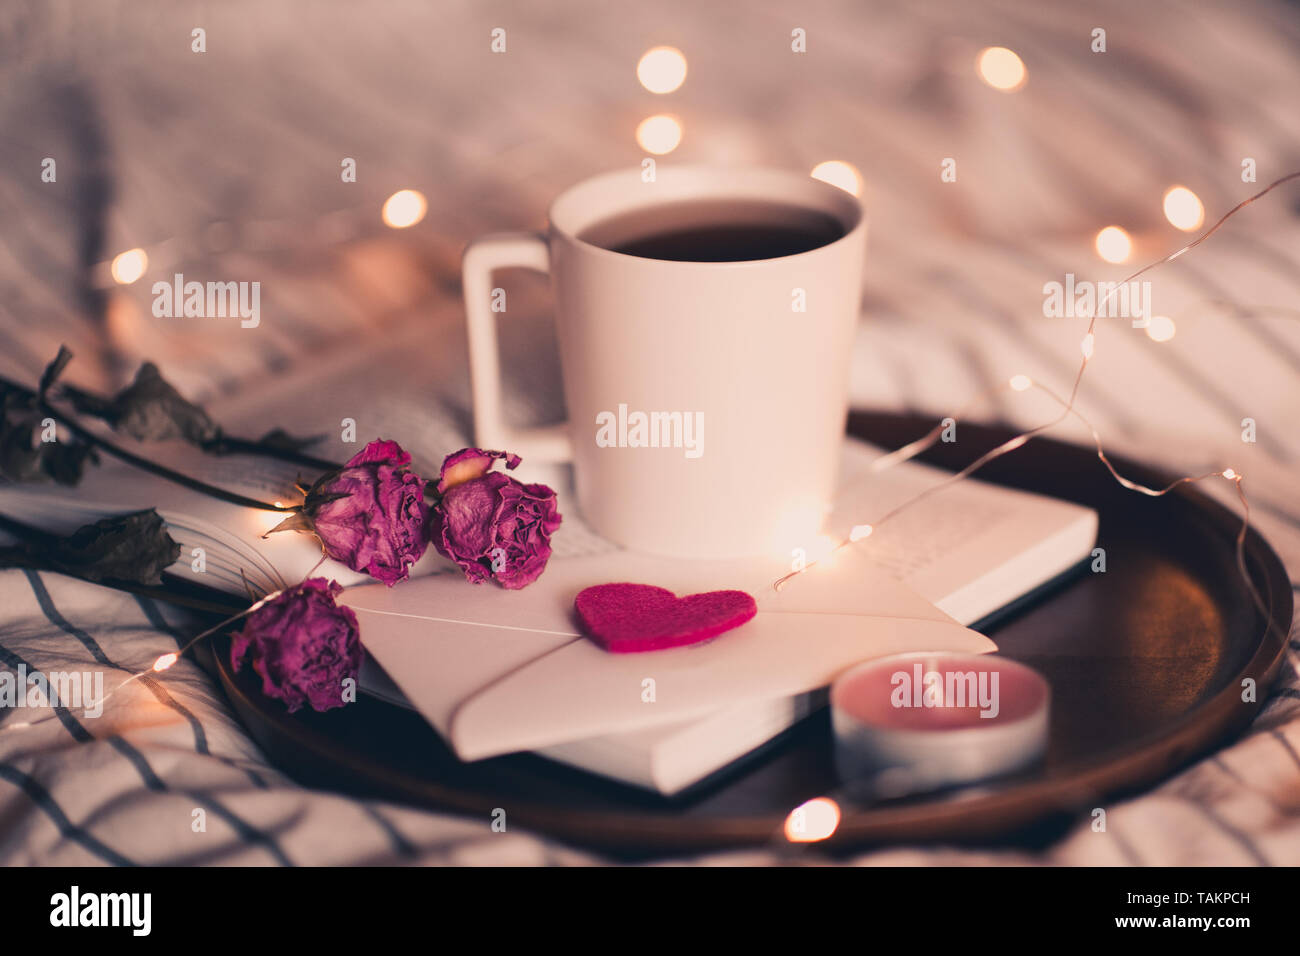 Tazza di tè che soggiornano sul libro aperto con i fiori e la busta in letto oltre le luci sul background. Il giorno di San Valentino. Foto Stock